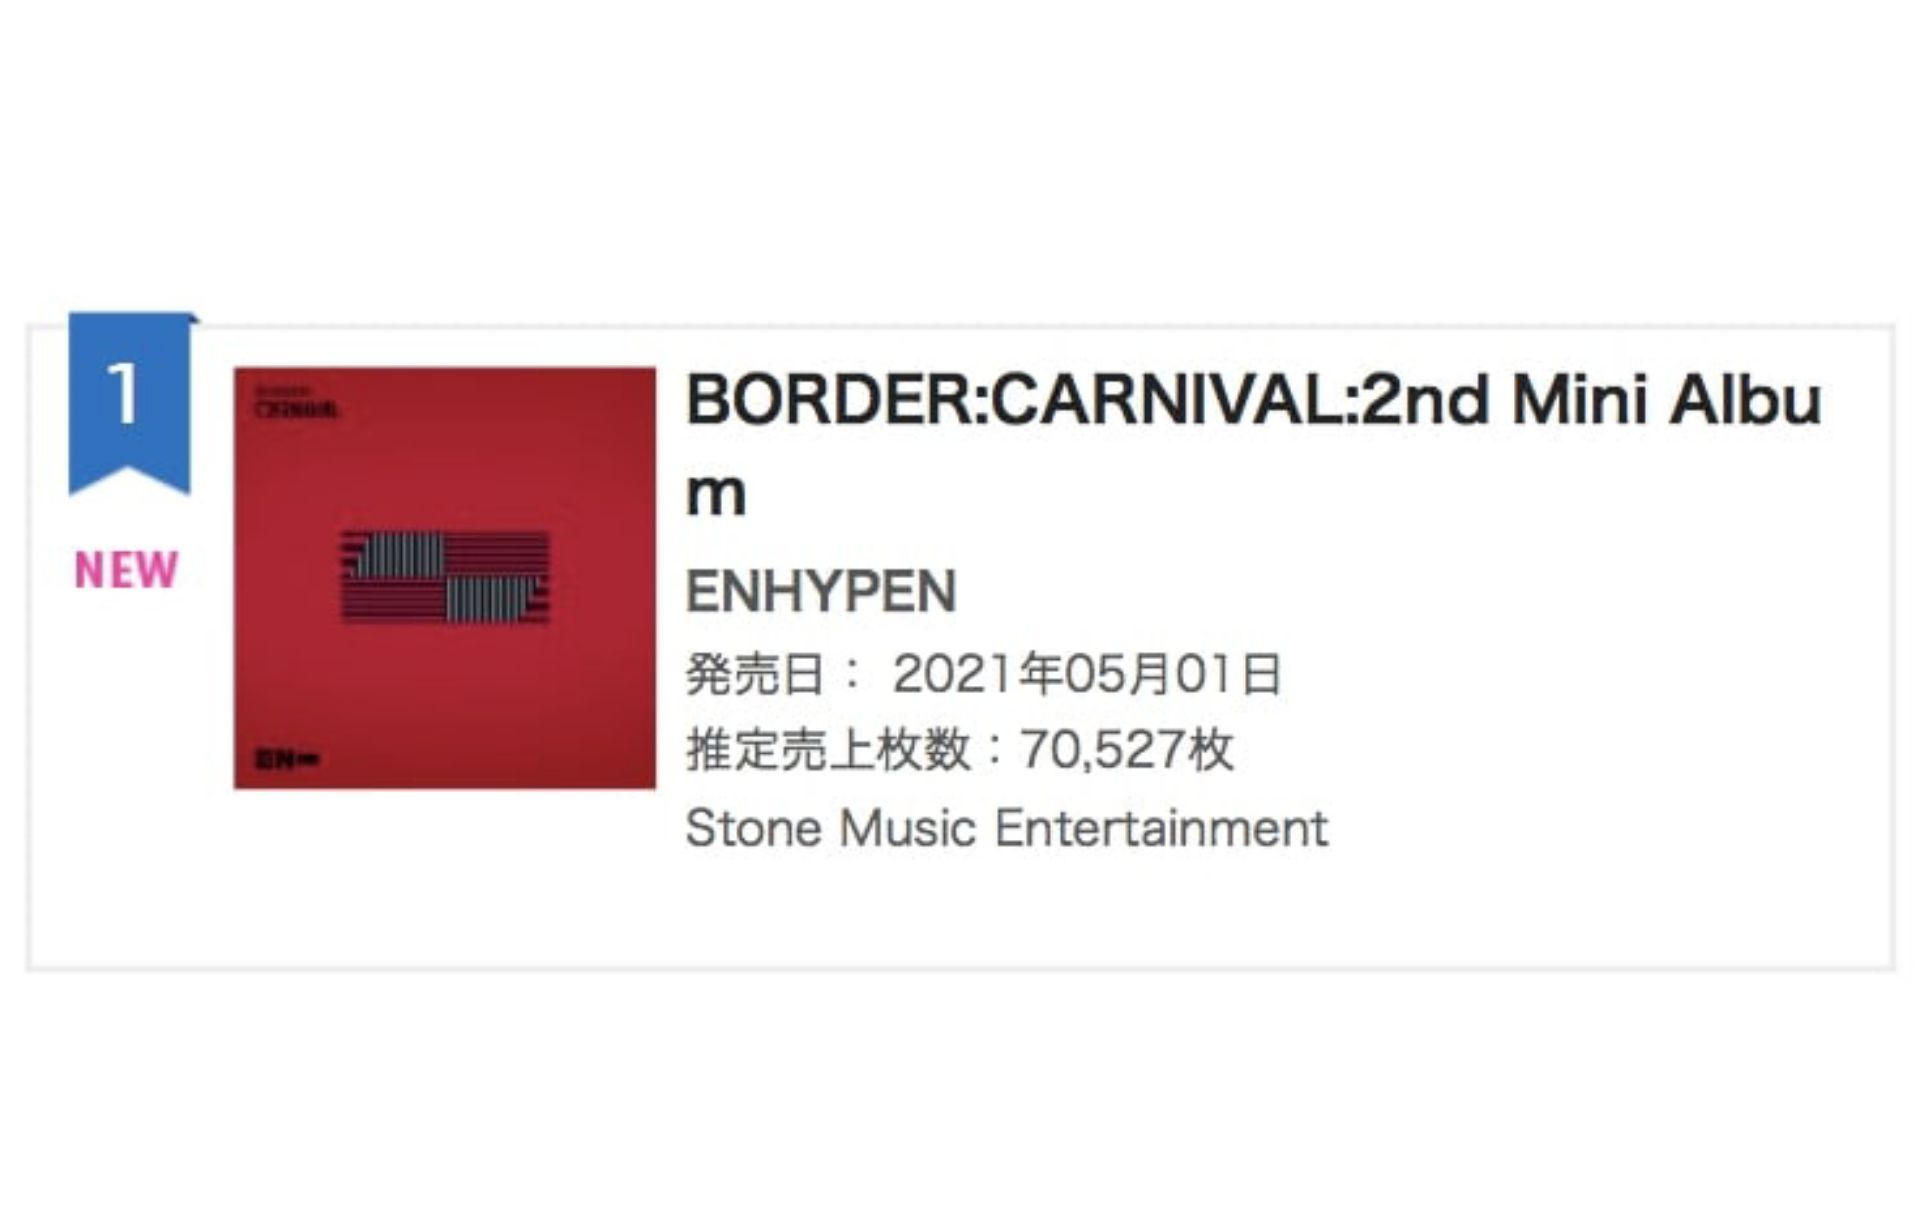 ENHYPEN Puncaki Tangga Lagu Harian Oricon Dengan "BORDER: CARNIVAL"